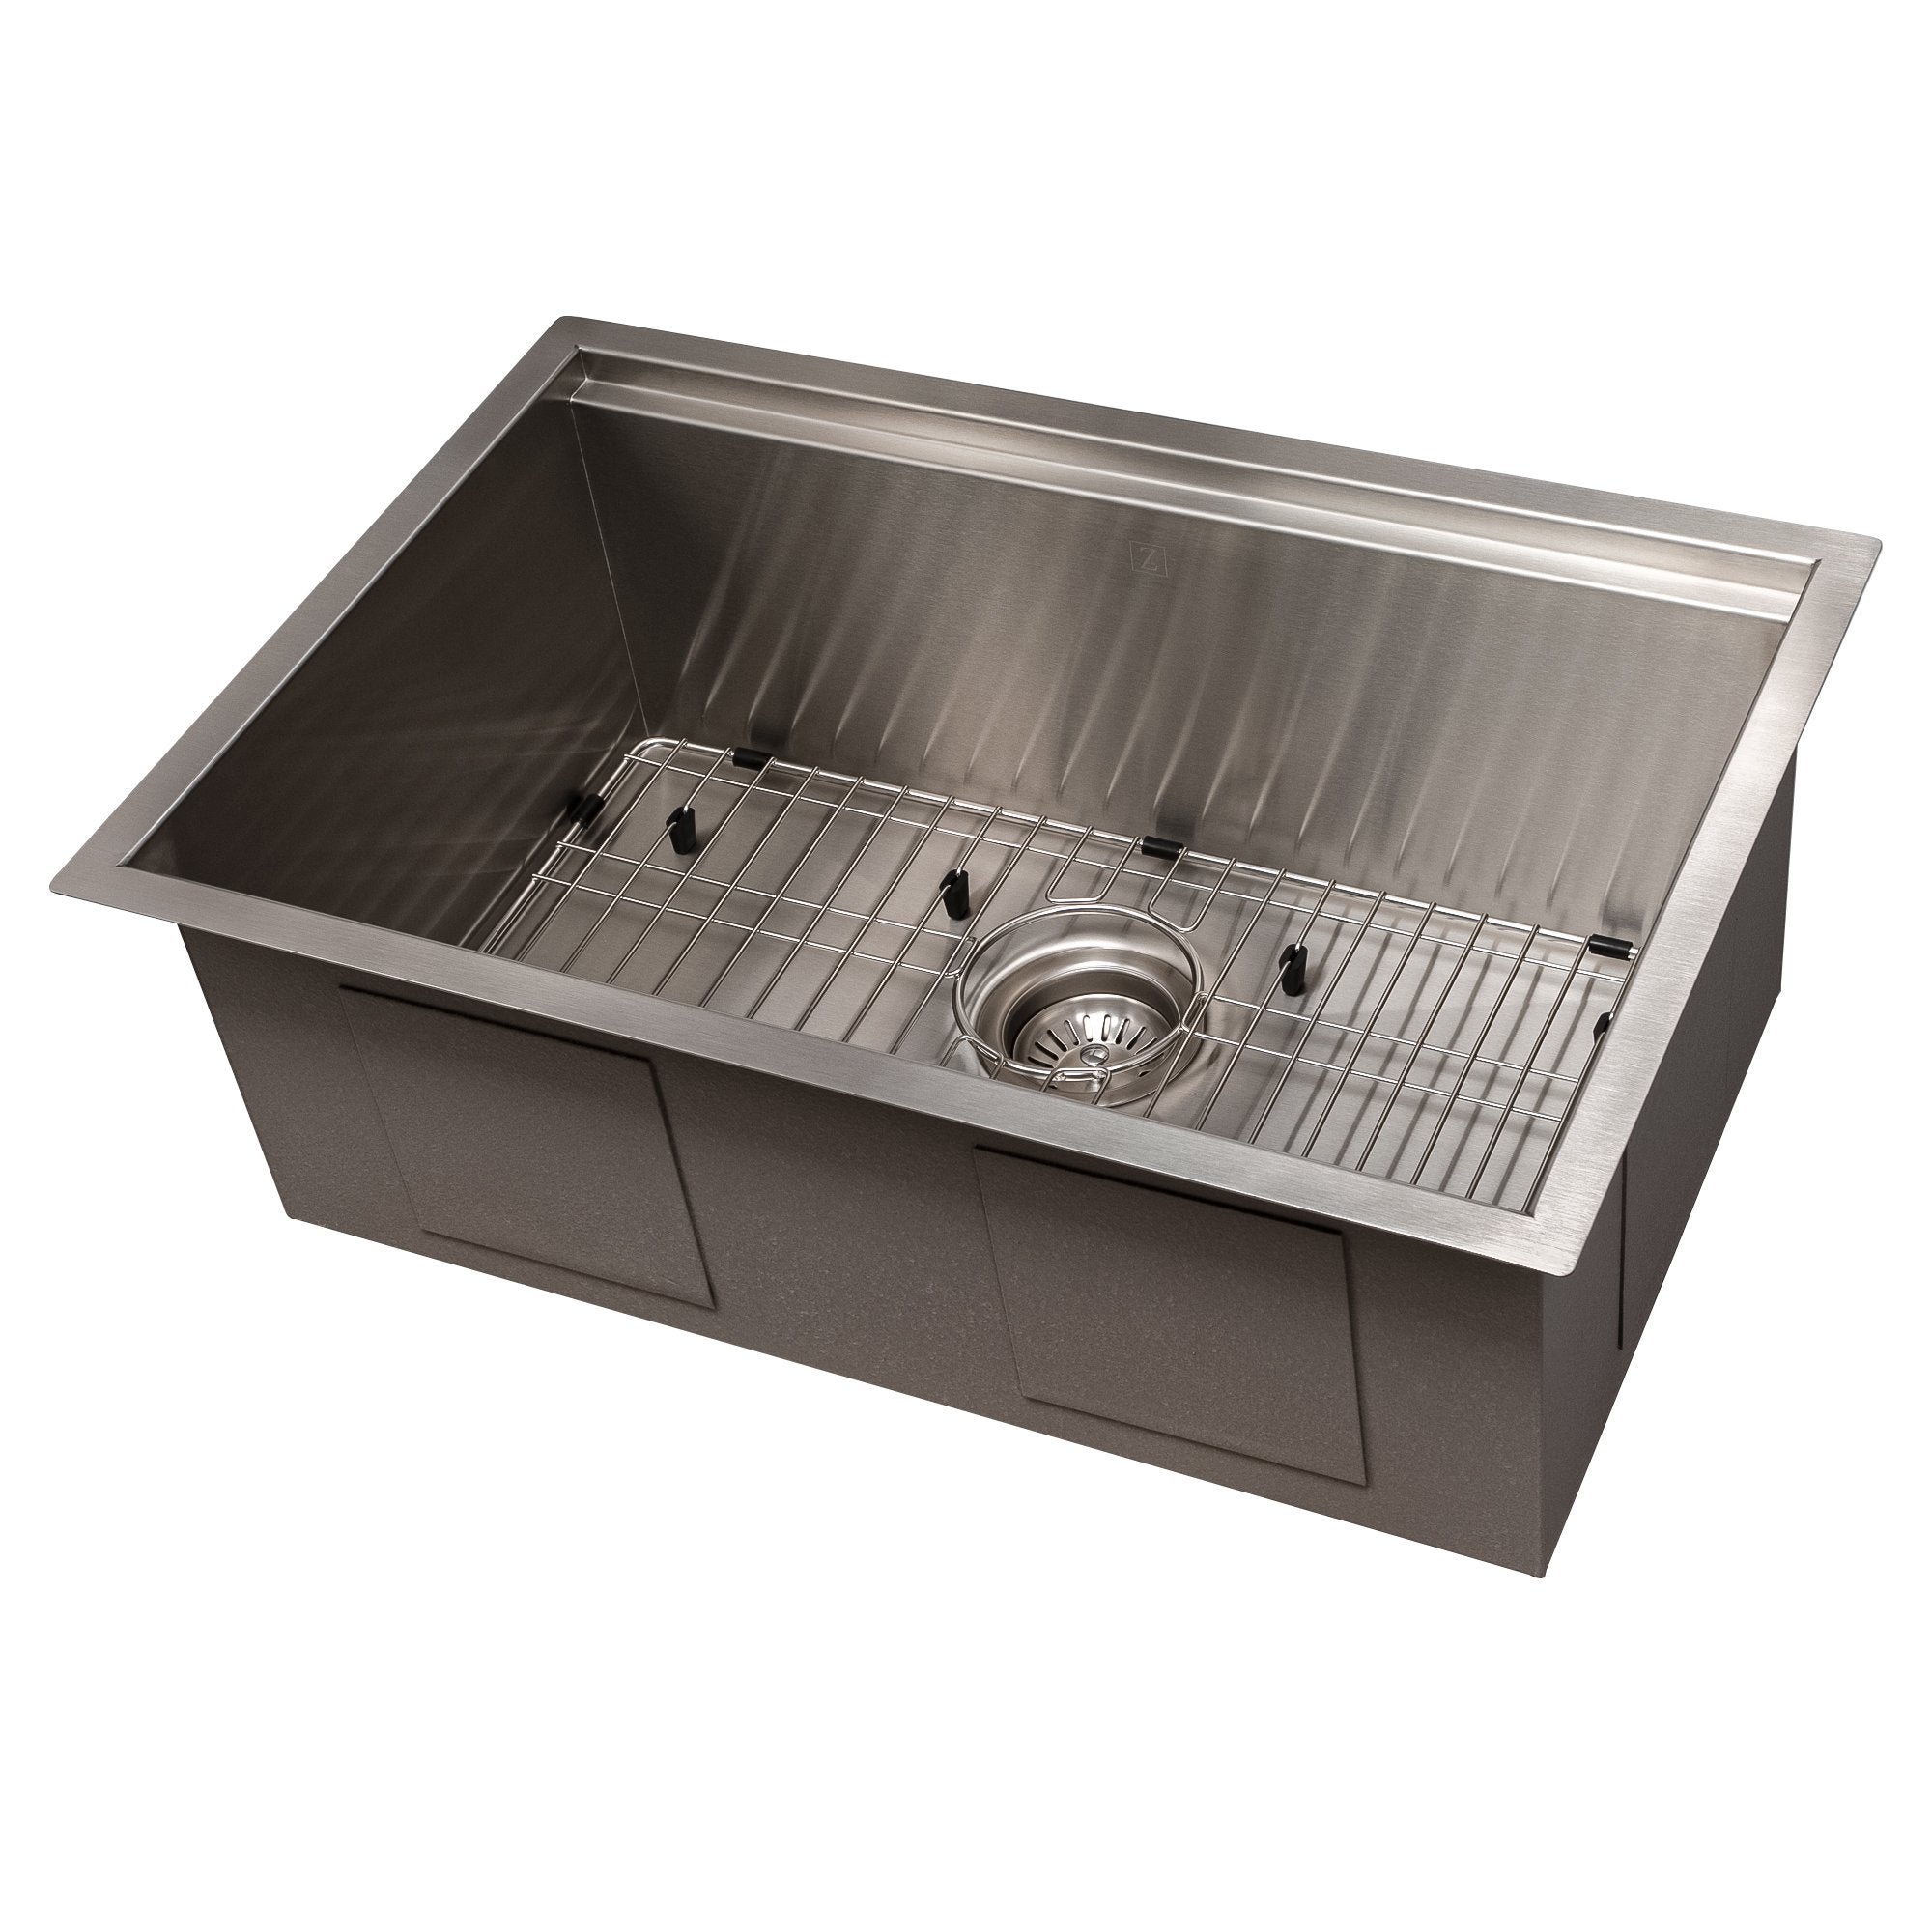 https://therangehoodstore.com/cdn/shop/products/zline-garmisch-27-undermount-single-bowl-sink-with-accessories-sls-zline-kitchen-and-bath-495607.jpg?v=1658334887